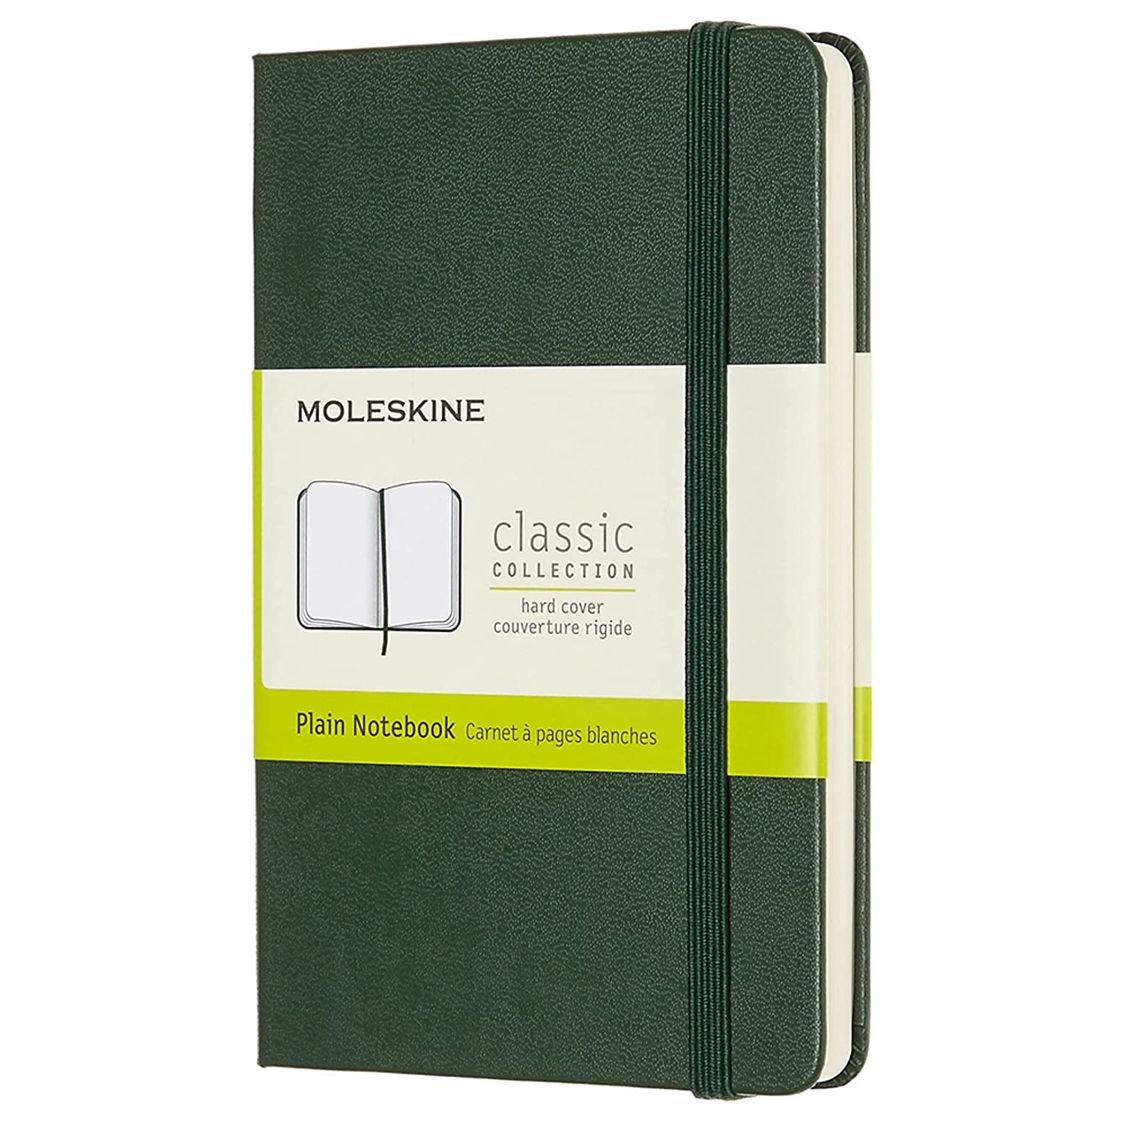 Moleskine Notebook, Pocket, Plain, Myrtle Green, Hard Cover (3.5 x 5.5)